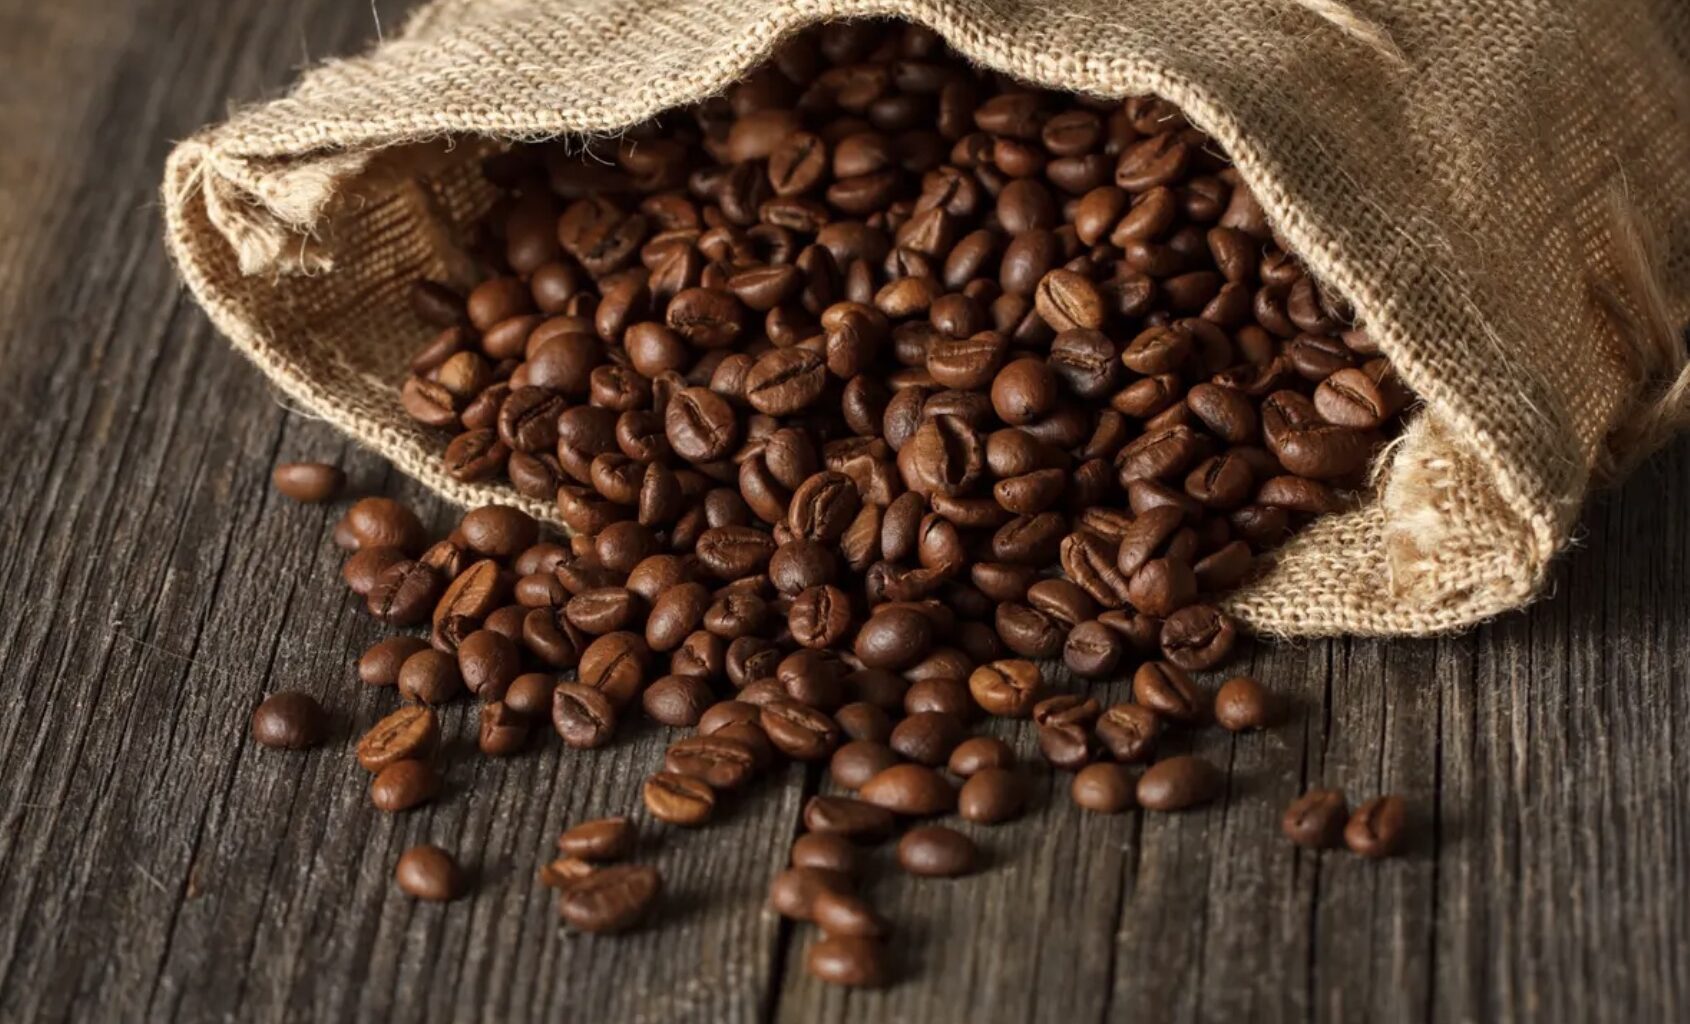 See uus avastus võib kohvi hinda mõjutada